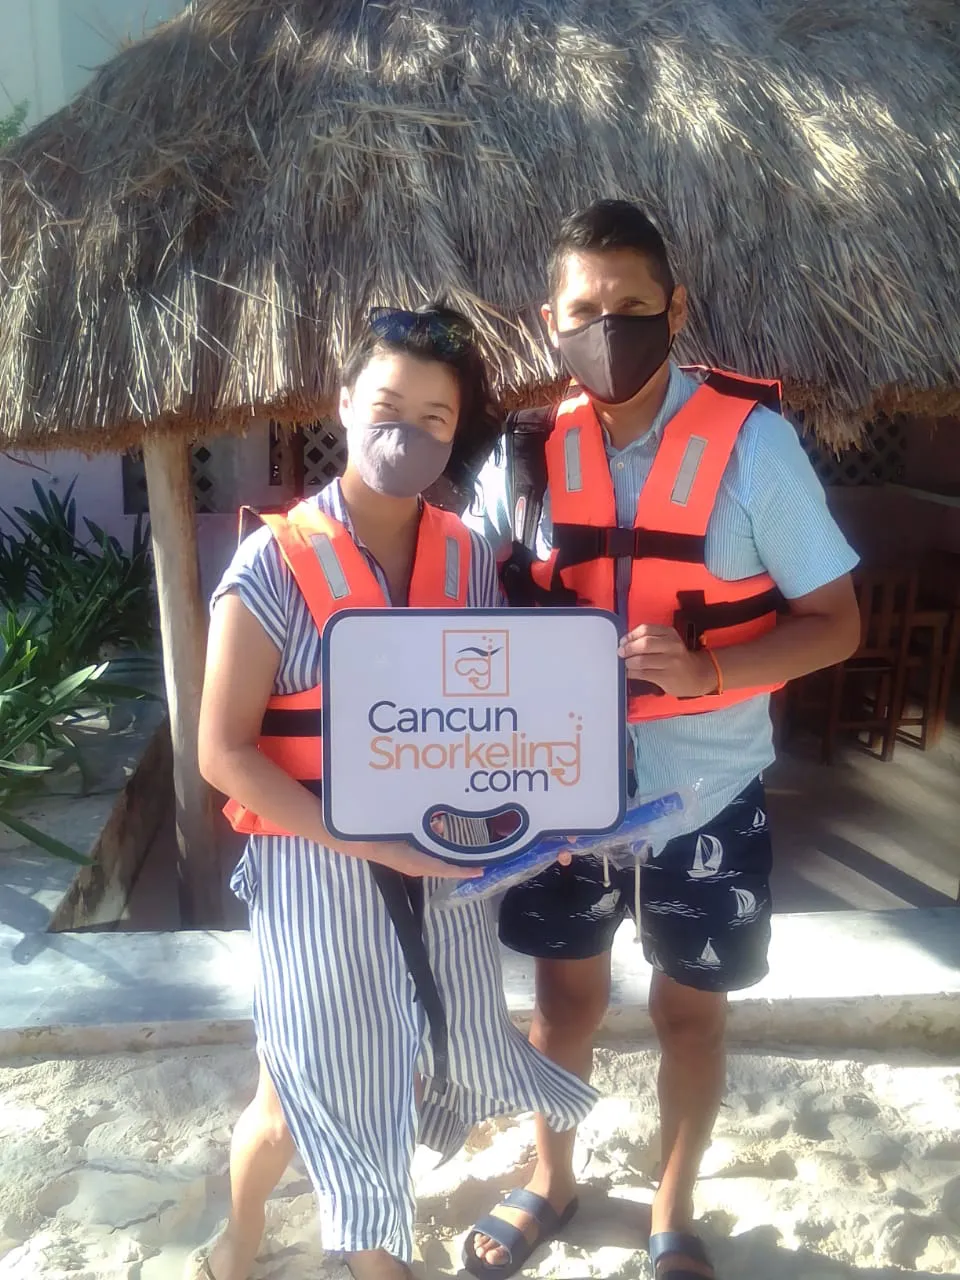 Pareja jóven parada en la arena usando chaleco salvavidas y agarrando un letreto que dice Cancun Snorkeling | Cancun Snorkeling